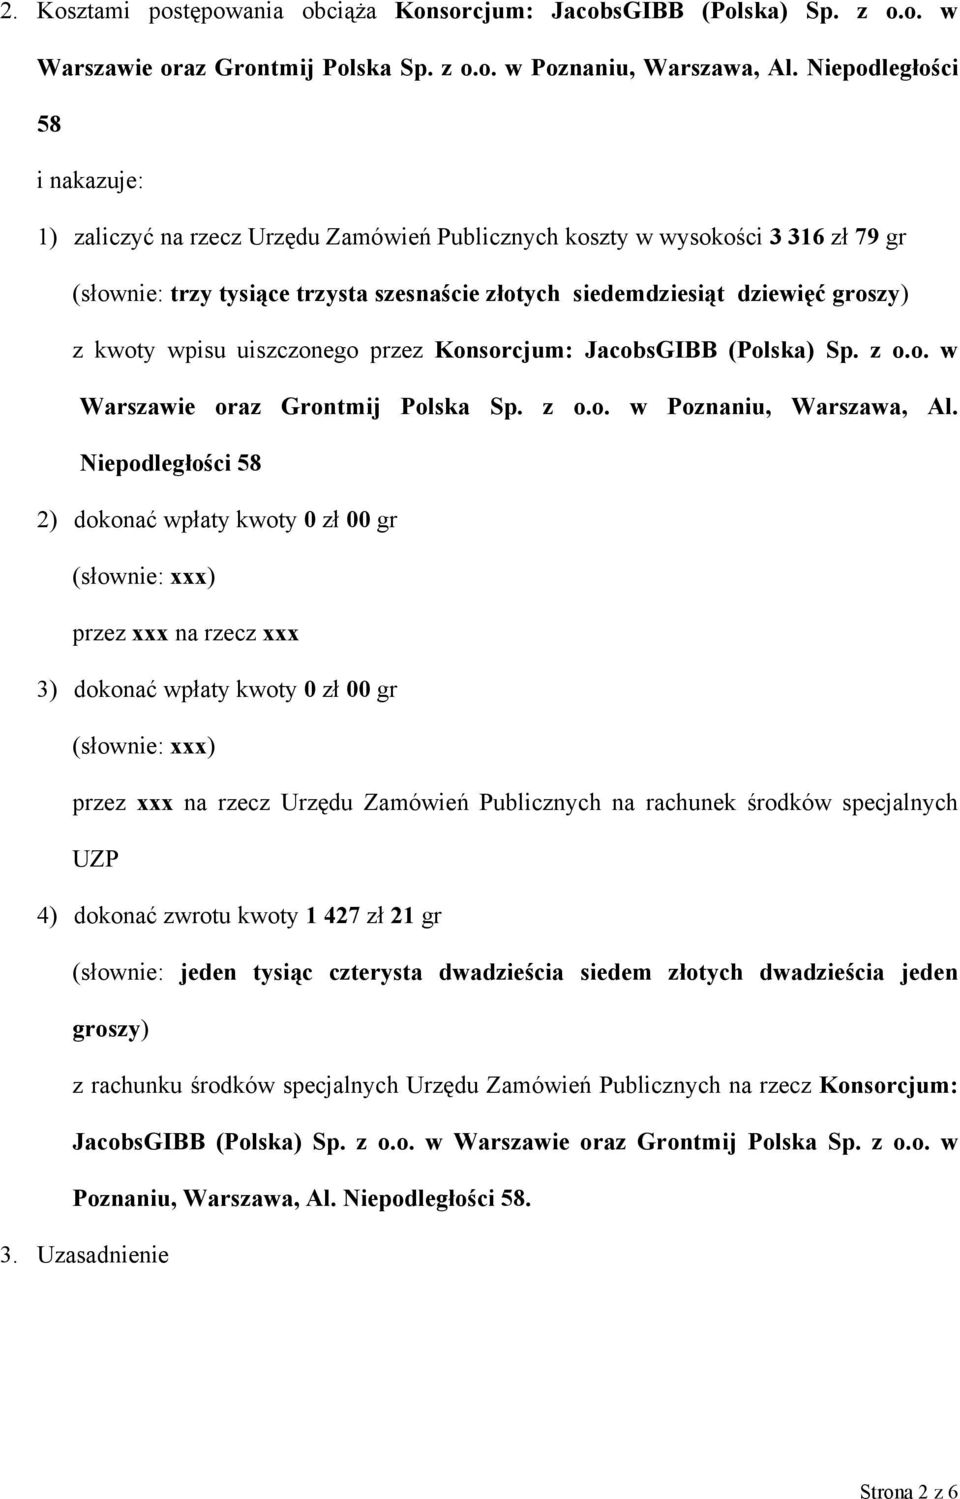 kwoty wpisu uiszczonego przez Konsorcjum: JacobsGIBB (Polska) Sp. z o.o. w Warszawie oraz Grontmij Polska Sp. z o.o. w Poznaniu, Warszawa, Al.